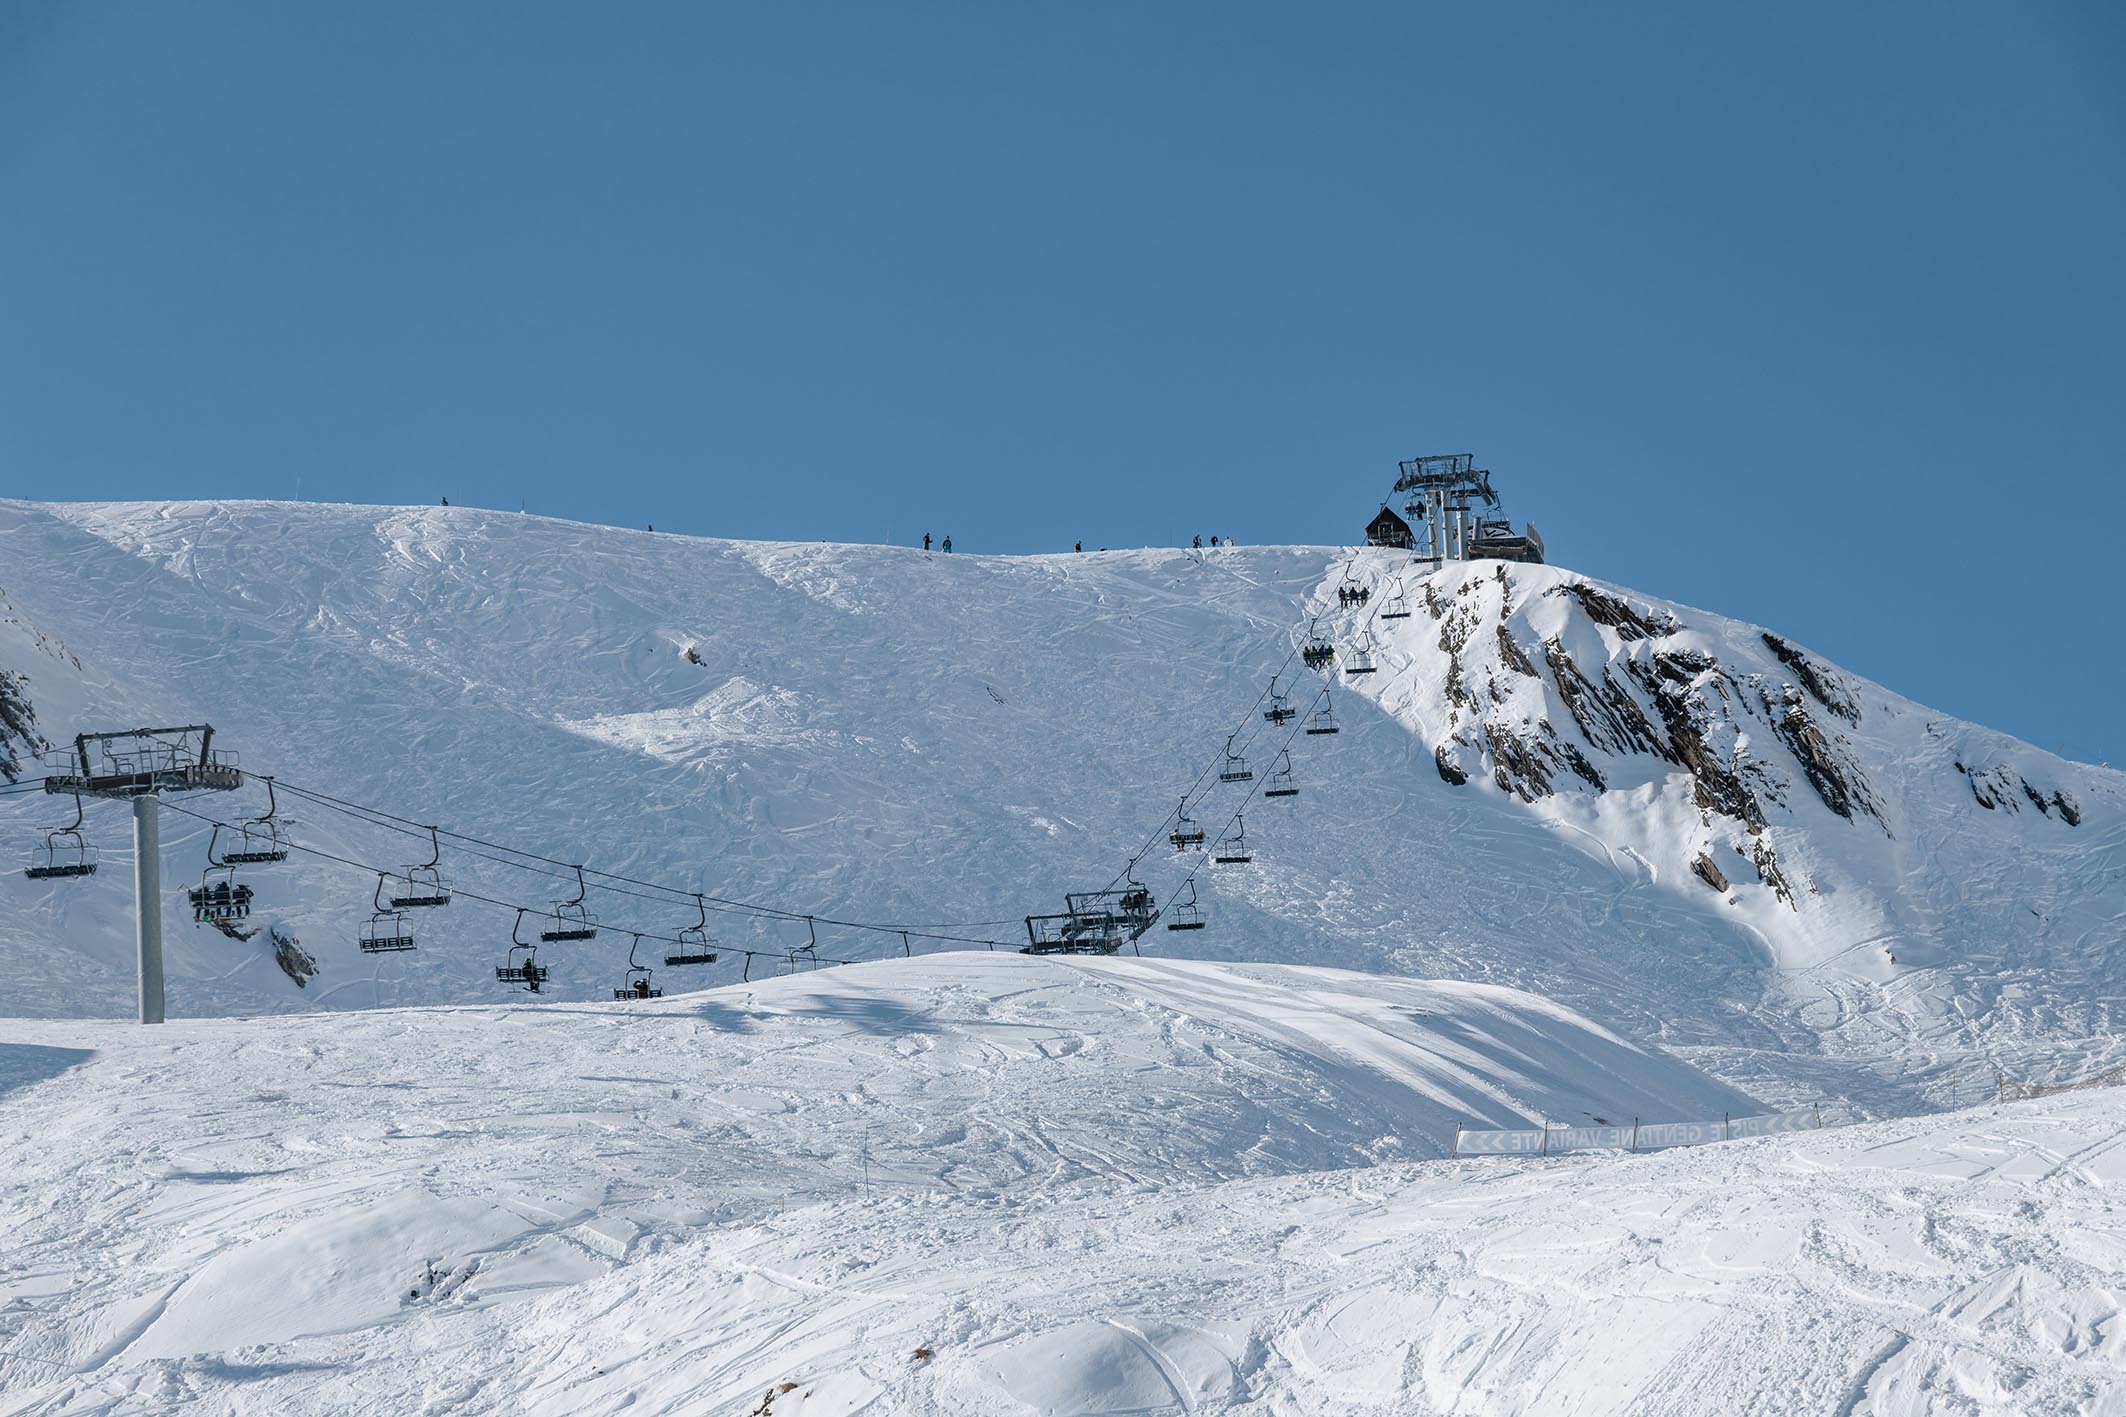 Cauterets arranca su 60 temporada por todo lo alto, con el 80% del dominio esquiable abierto